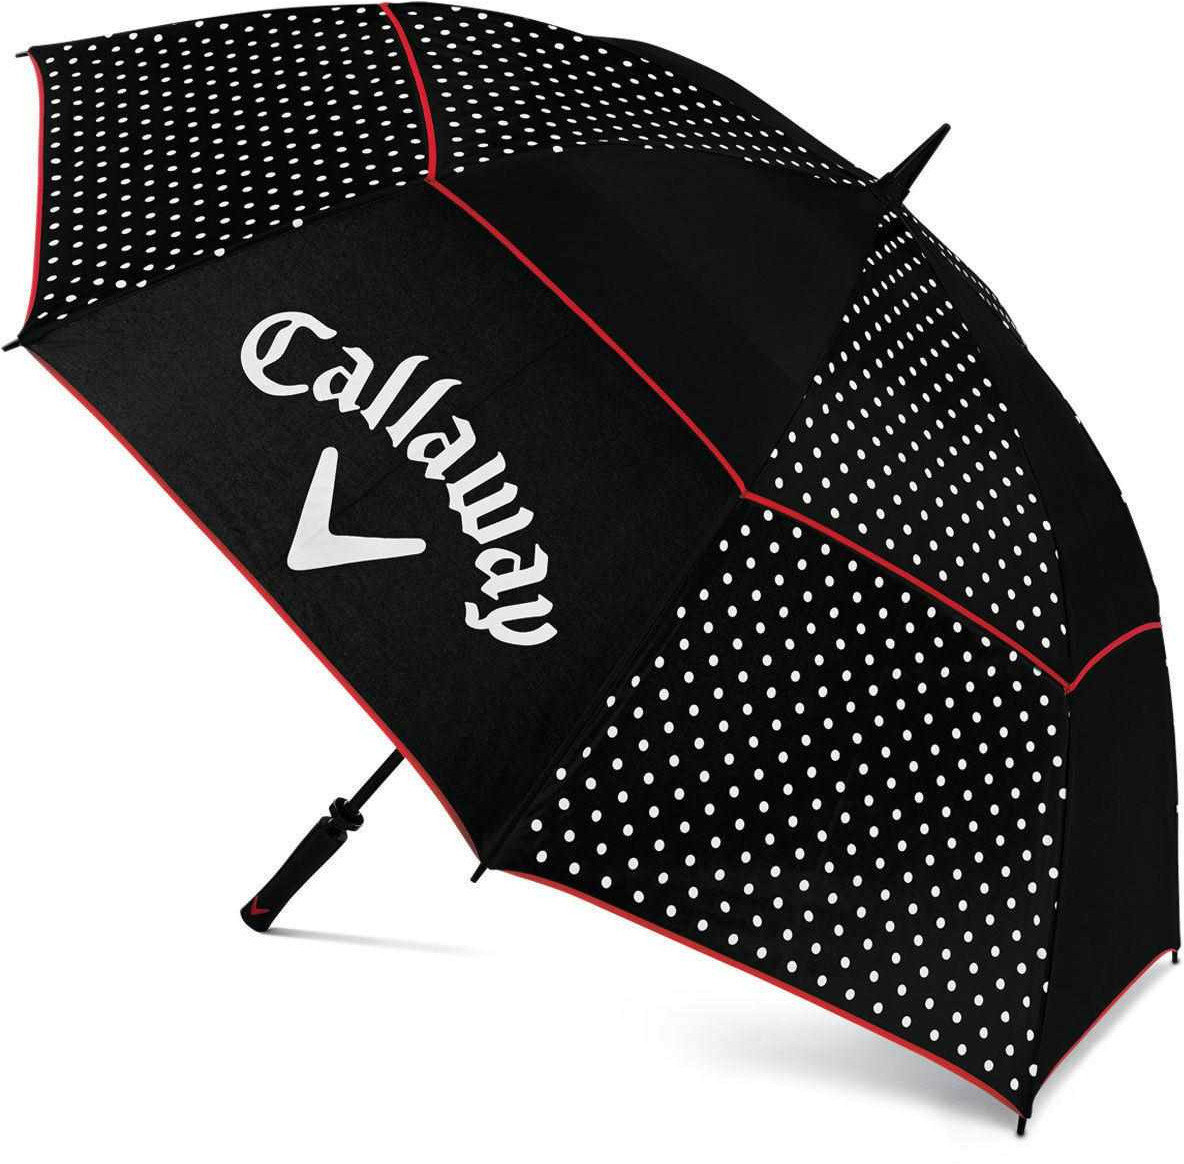 Paraply Callaway Umbrella Blk/Wht